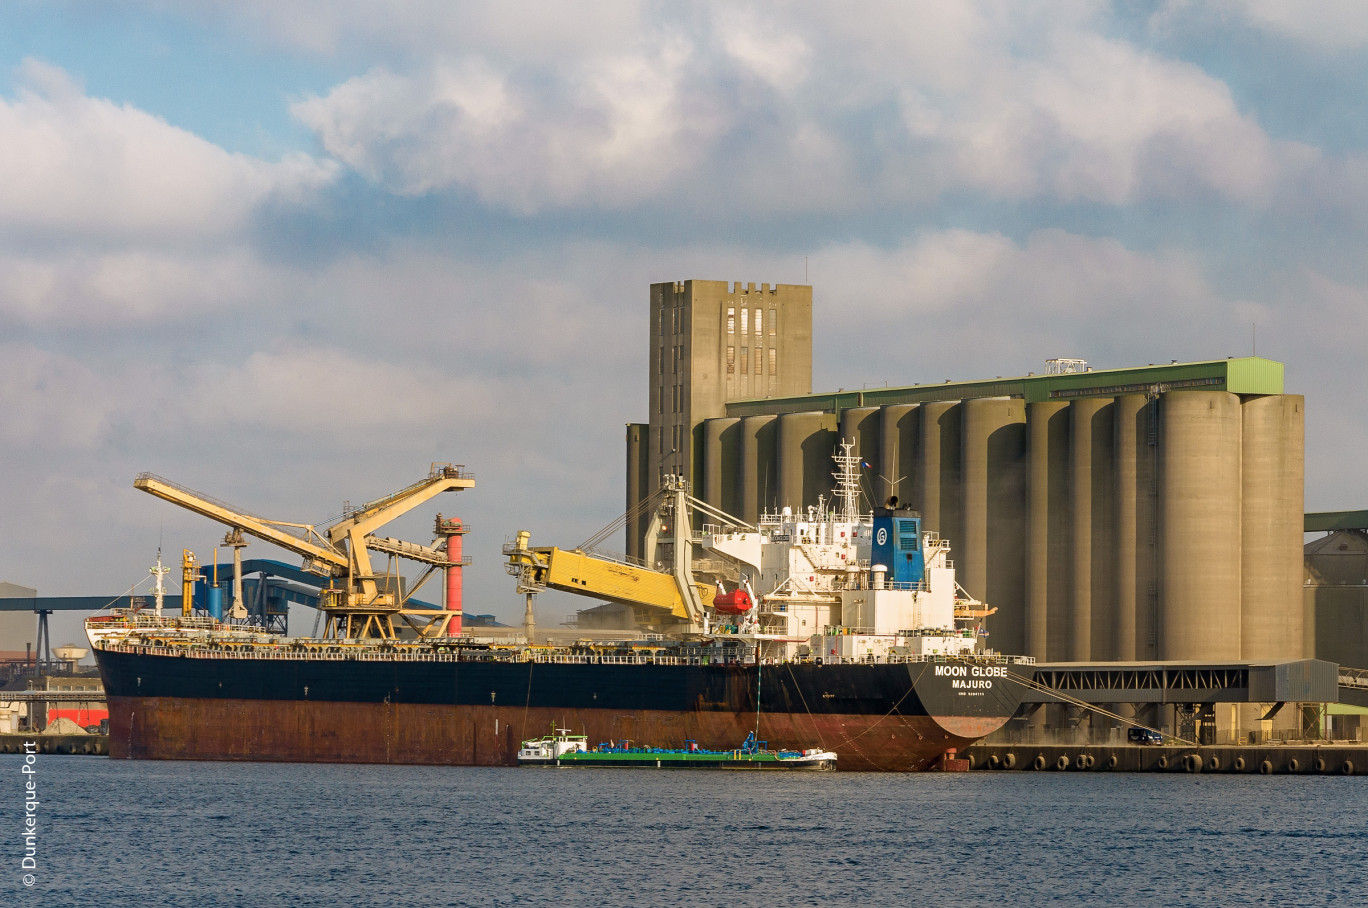 Le « Moon Globe », navire Panamax de 225 m de long et 32.26 m de large, a fait escale au Port de Dunkerque afin d’y charger plus de 60.000 tonnes de blé.